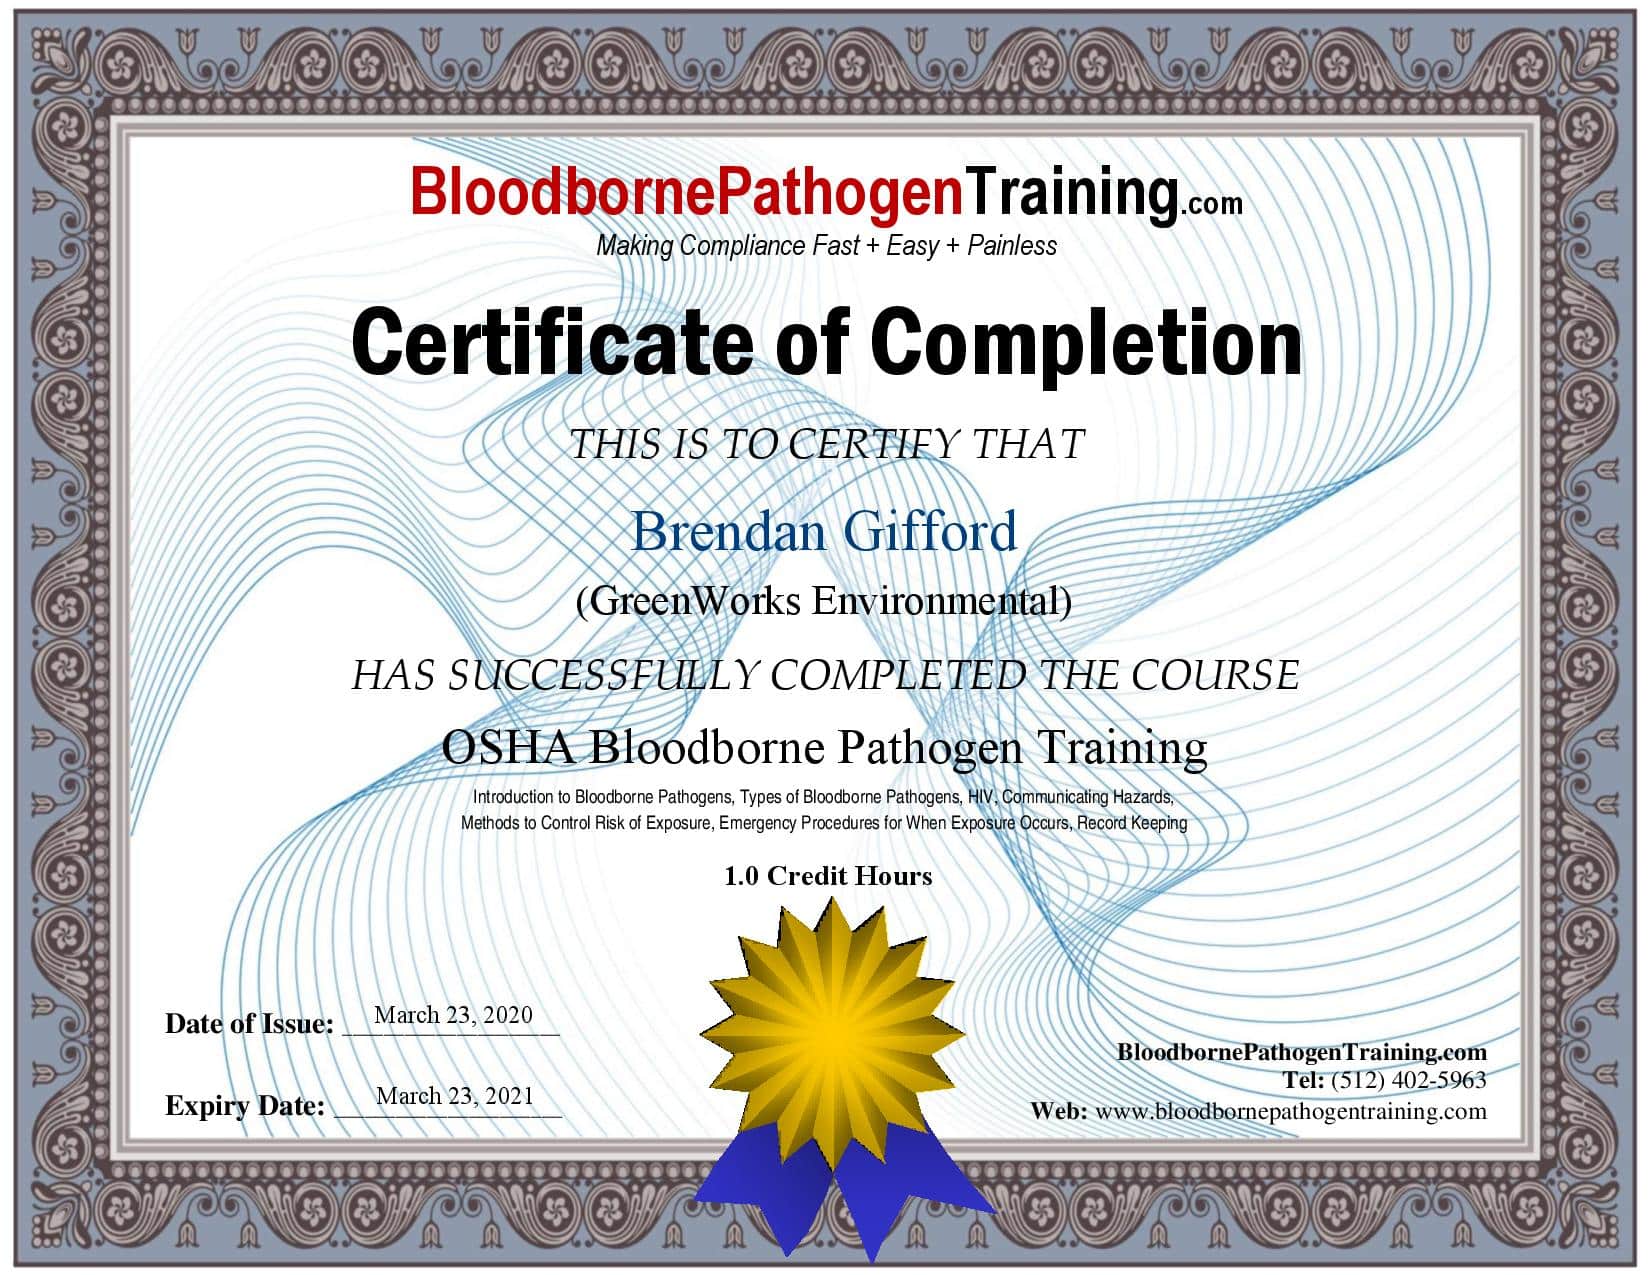 Gifford - bloodborne pathogen training